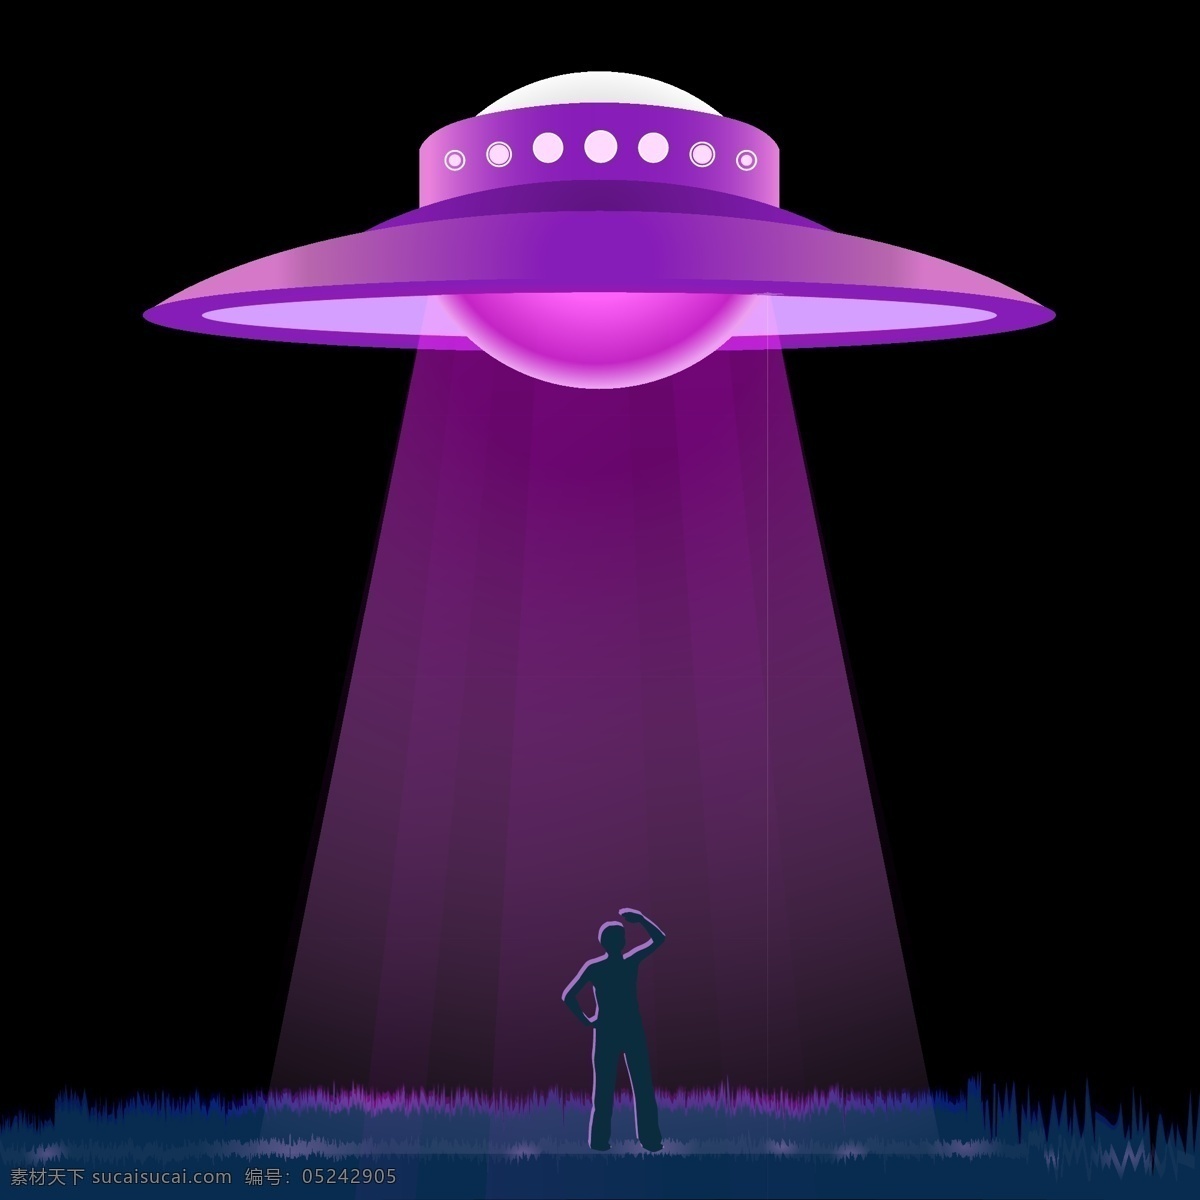 紫色 神秘 ufo 降临 宇航 日 宇航日 飞行 飞碟 飞船 仰望 照射 草丛 入侵 光照 外星人 宇宙 外太空